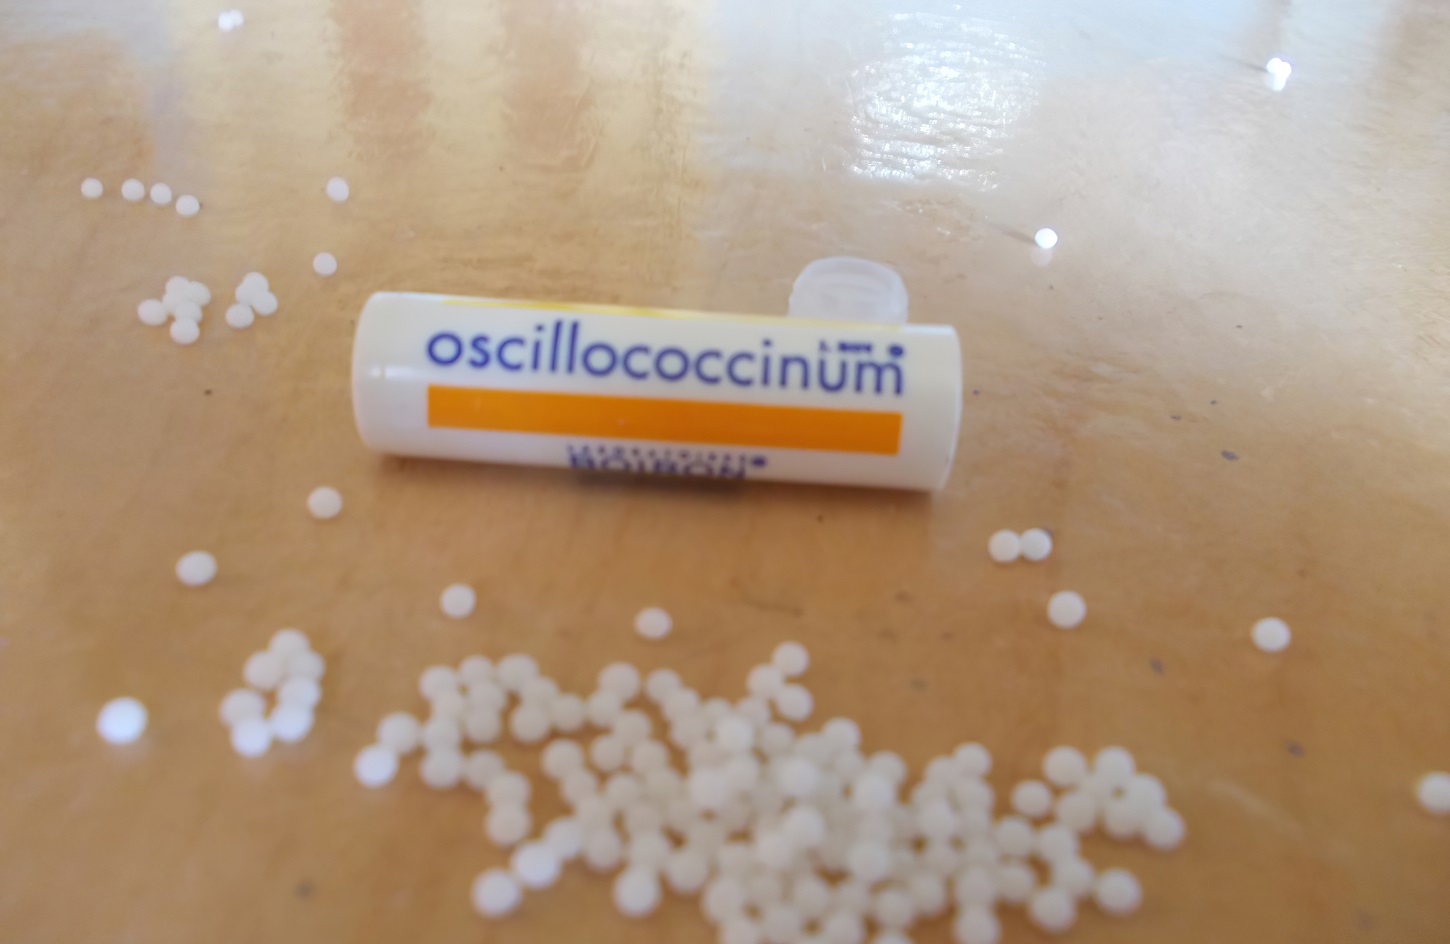 Oscillococcinum 